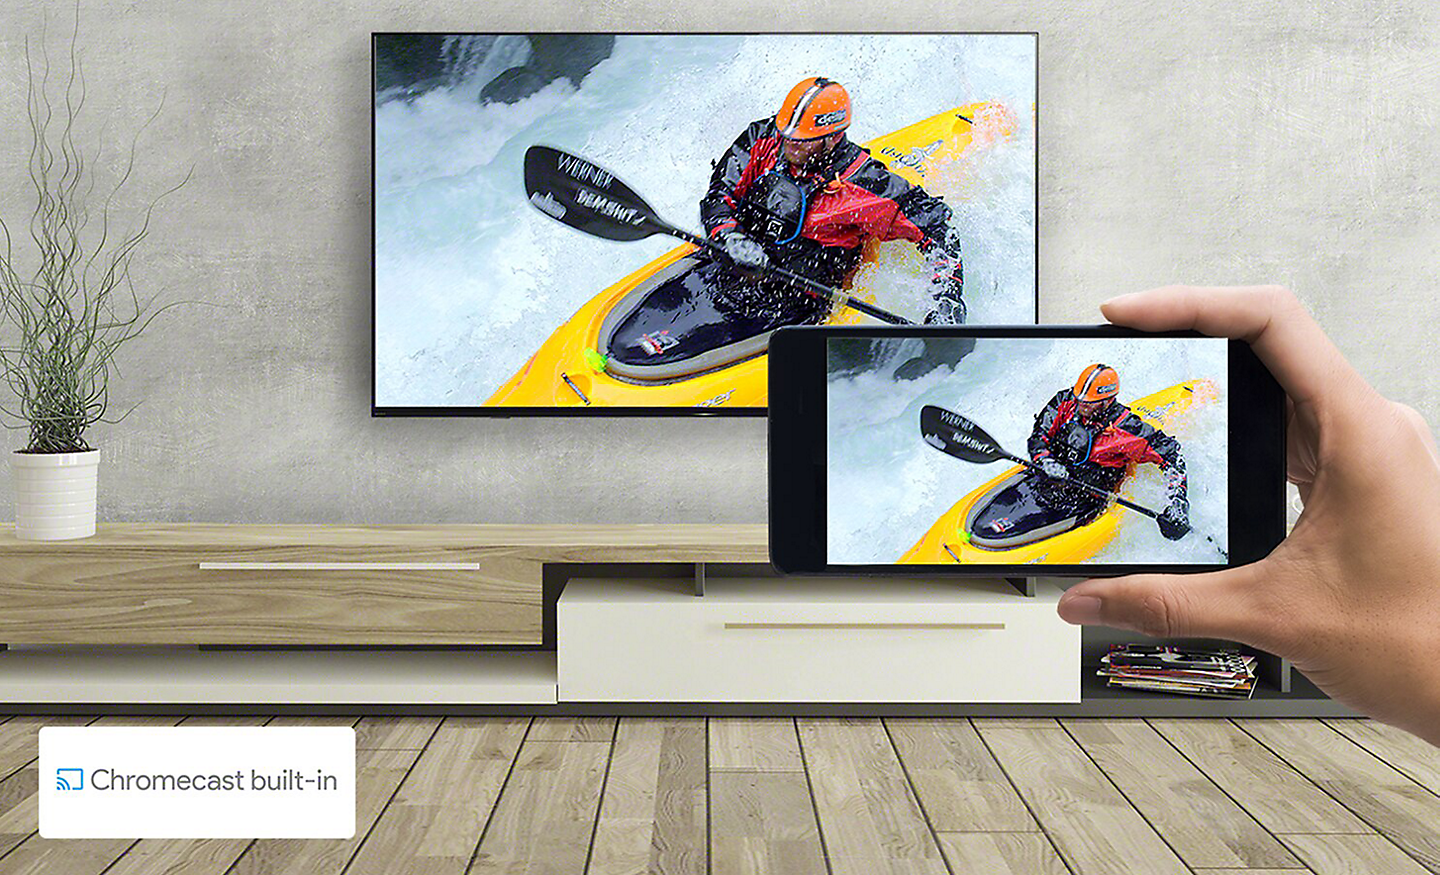 Salon avec un téléviseur et une main tenant un smartphone. Les deux écrans montrent la même image de kayak. Un logo Chromecast built-in se trouve en bas à droite.